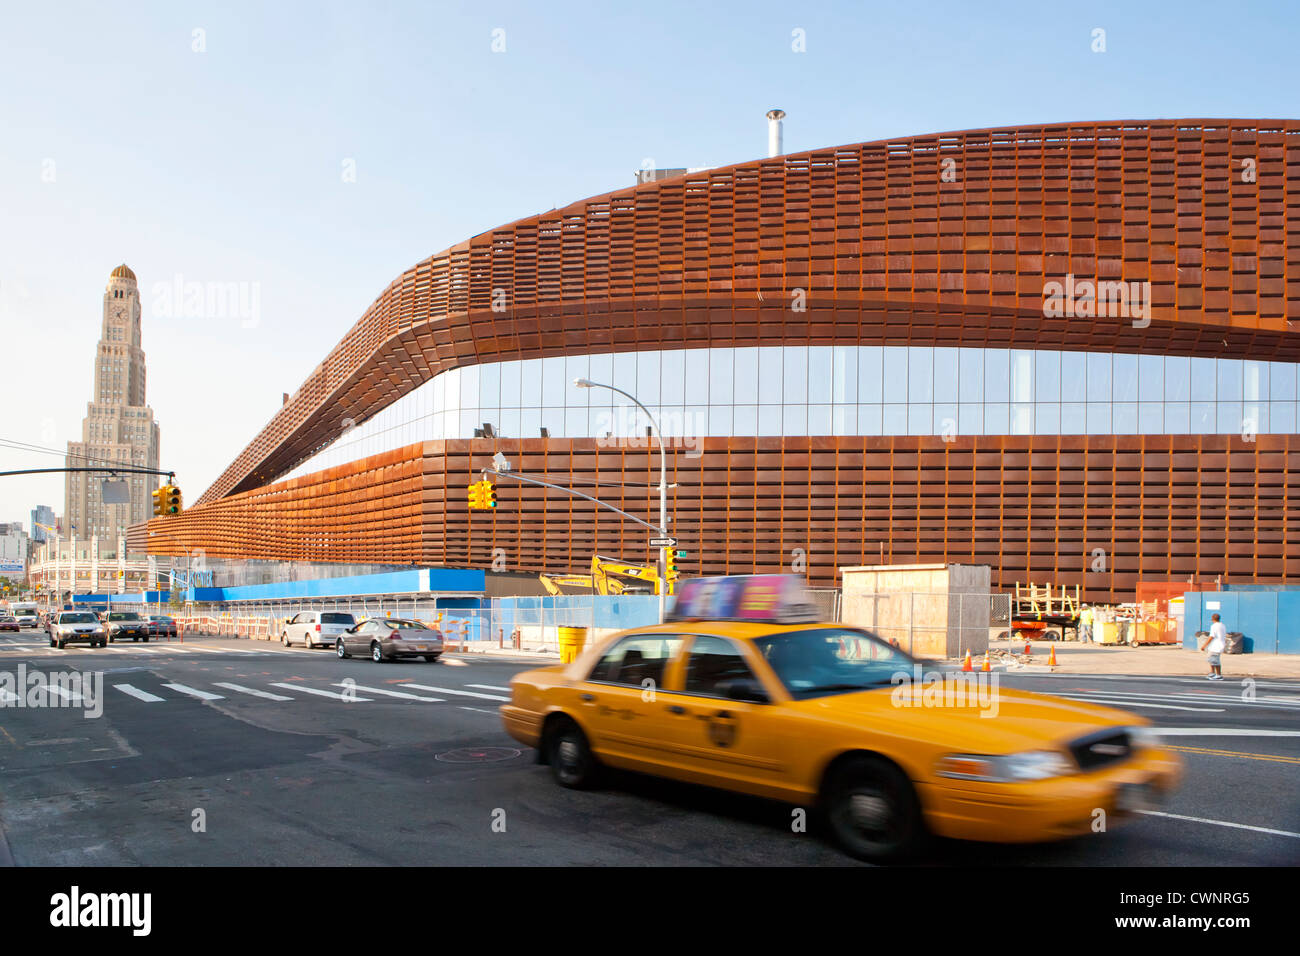 New York City Taxi fährt weiter neue Barclays Center der Brooklyn Nets Sportarena und Konzertsaal nach Hause.  Das Wahrzeichen Williamsburgh Sparkasse Turm im Hintergrund, Brooklyn, NY, USA Stockfoto